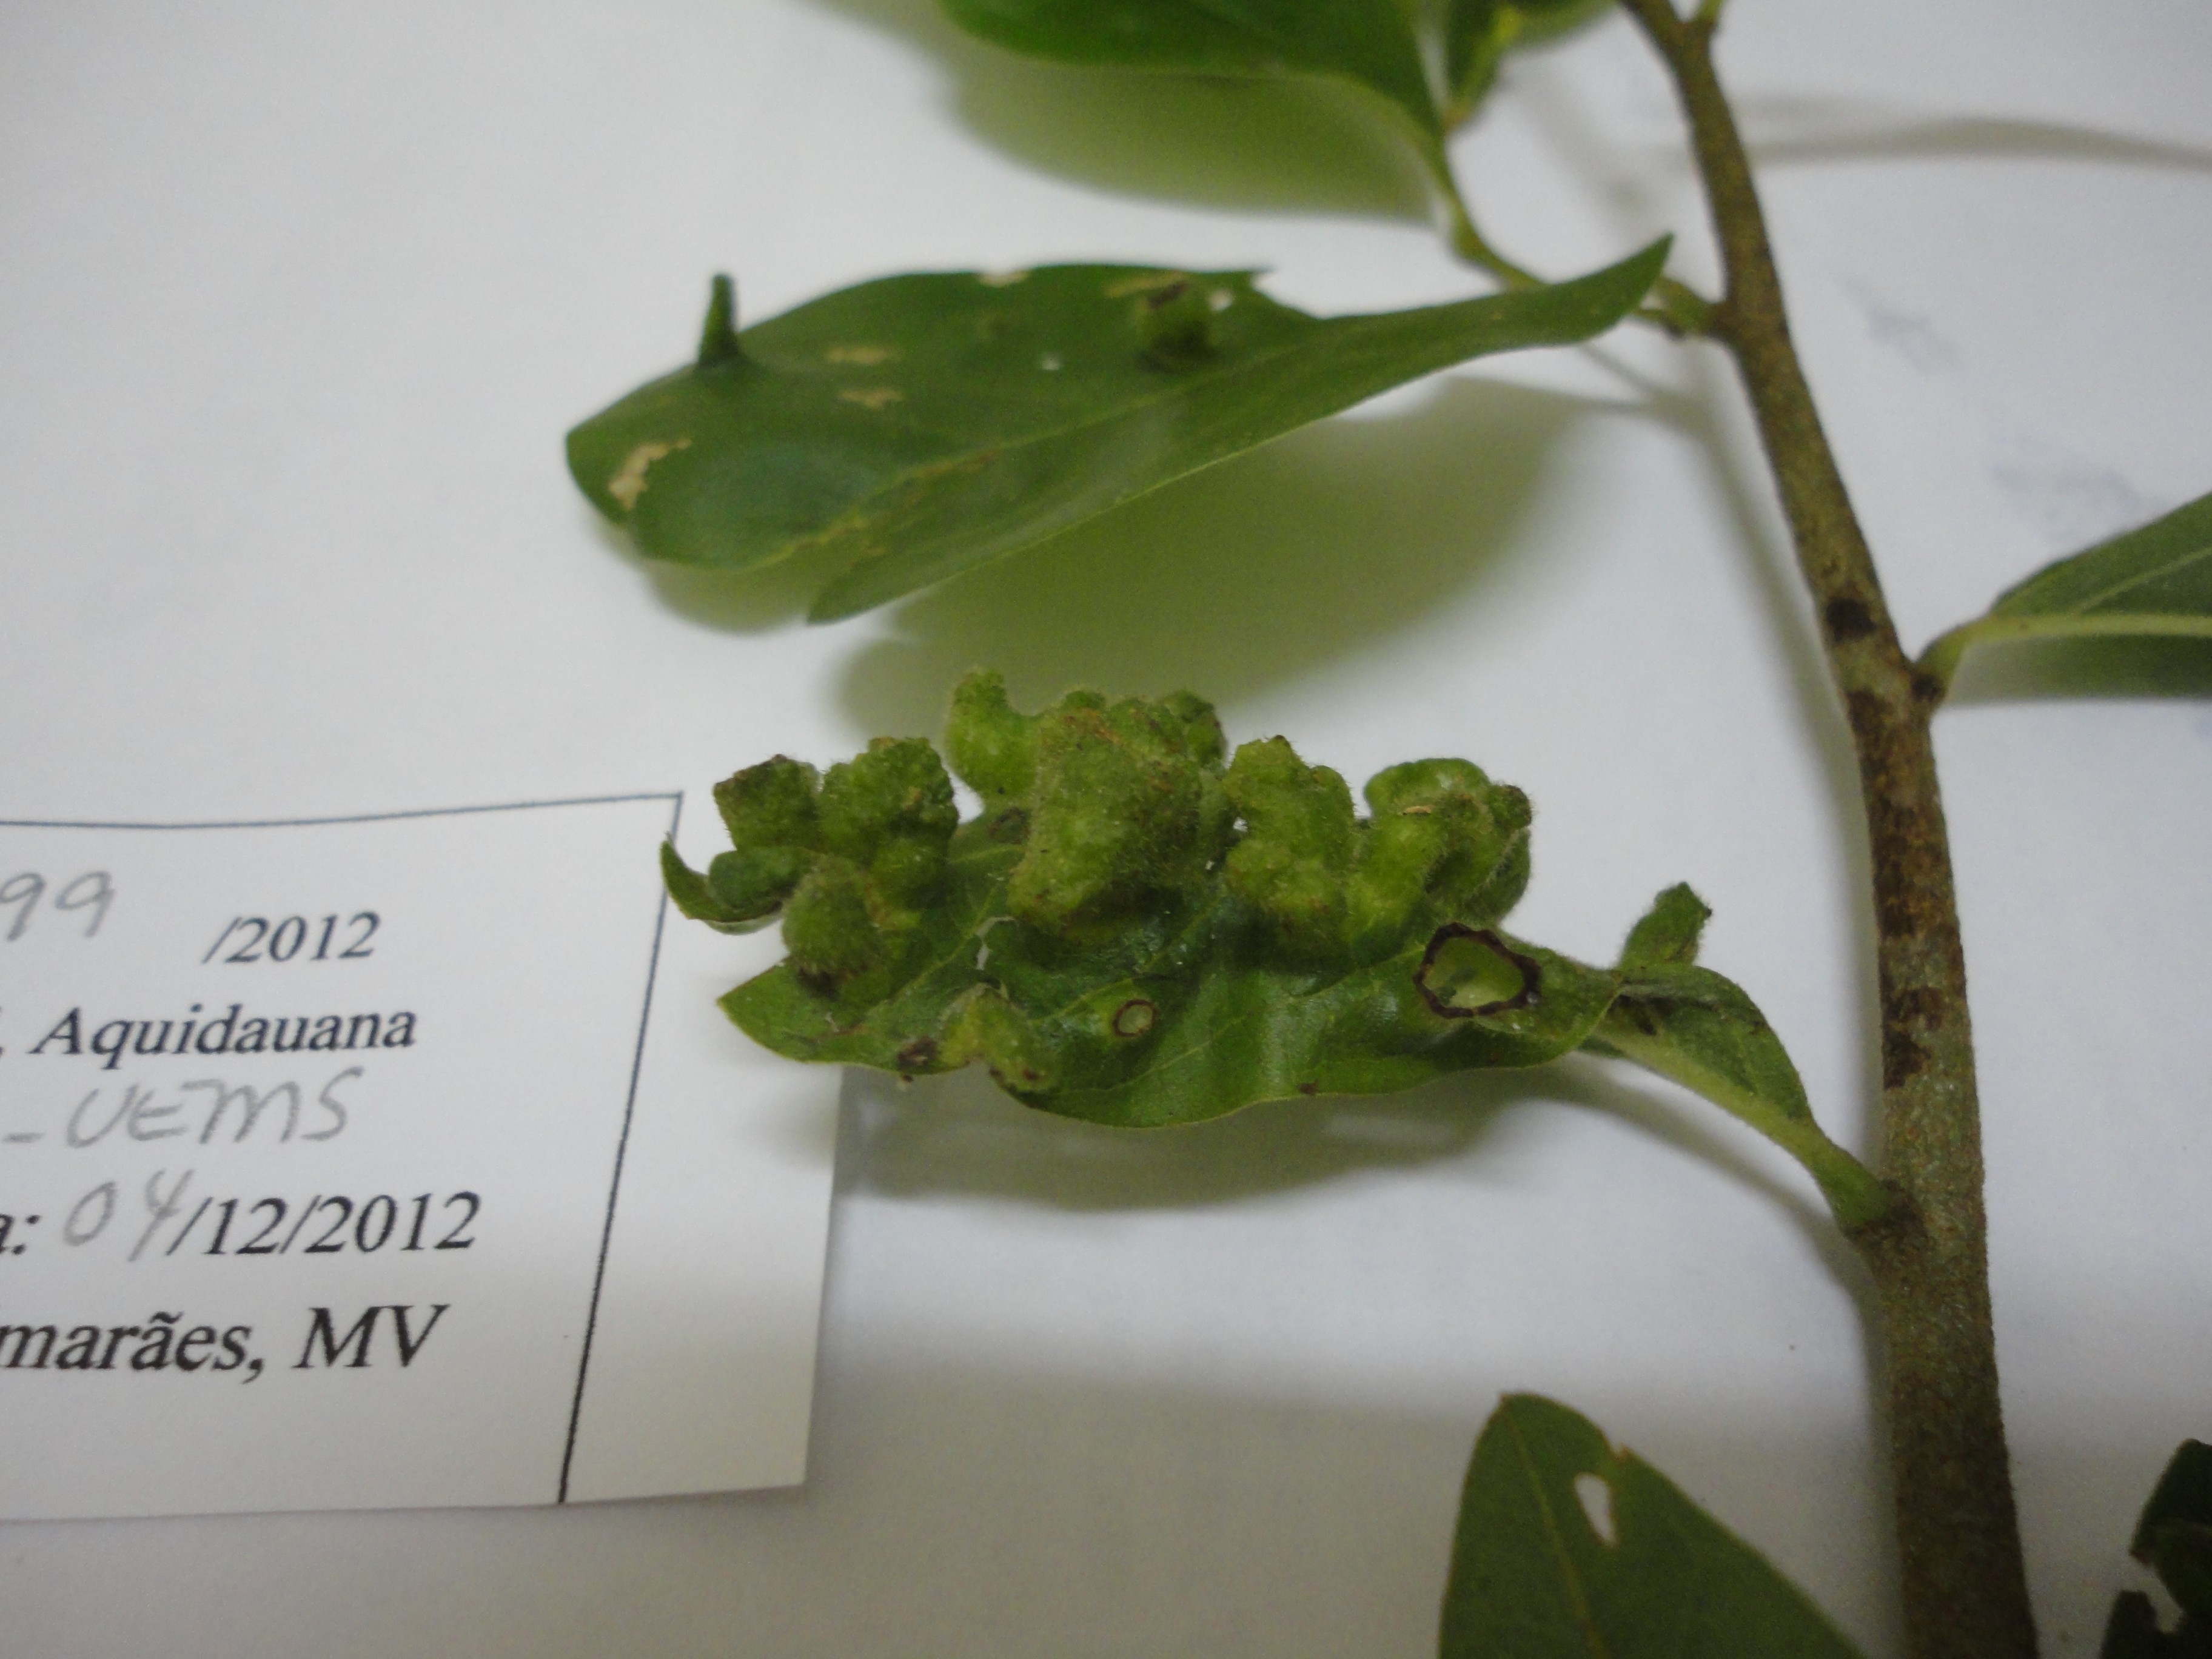 Galhas foliares coletadas no Mato Grosso do Sul em 2012, durante expedição do projeto Sisbiota-Diptera. Material ainda sem identificação (Foto: Divulgação/Maria Virginia Urso-Guimarães)